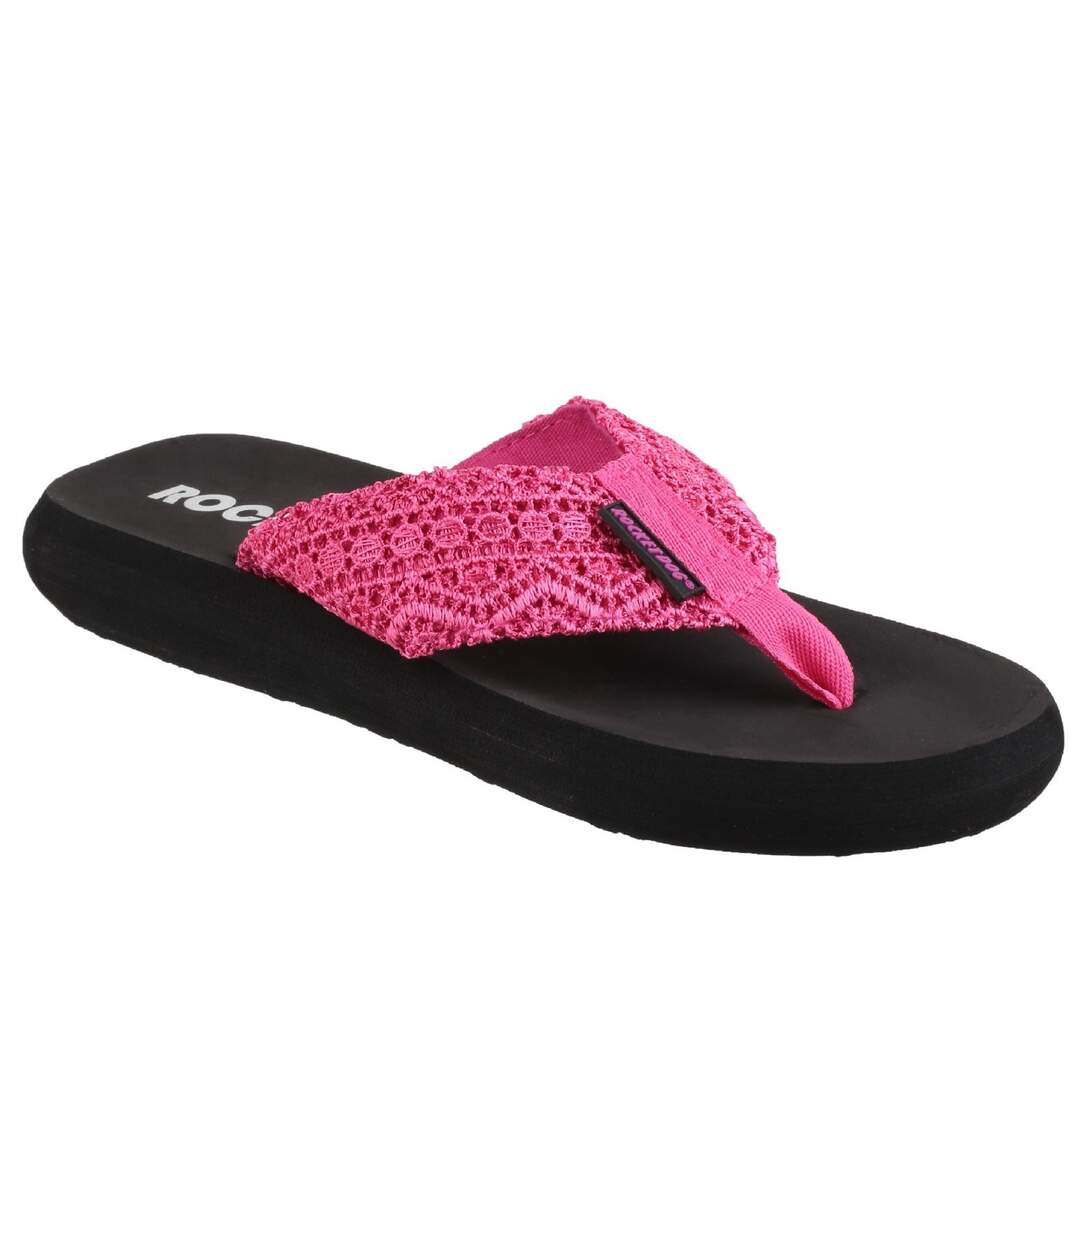 Rocket Dog Womens/Ladies Spotlight Slip On Sandals (Pink) - UTFS5350